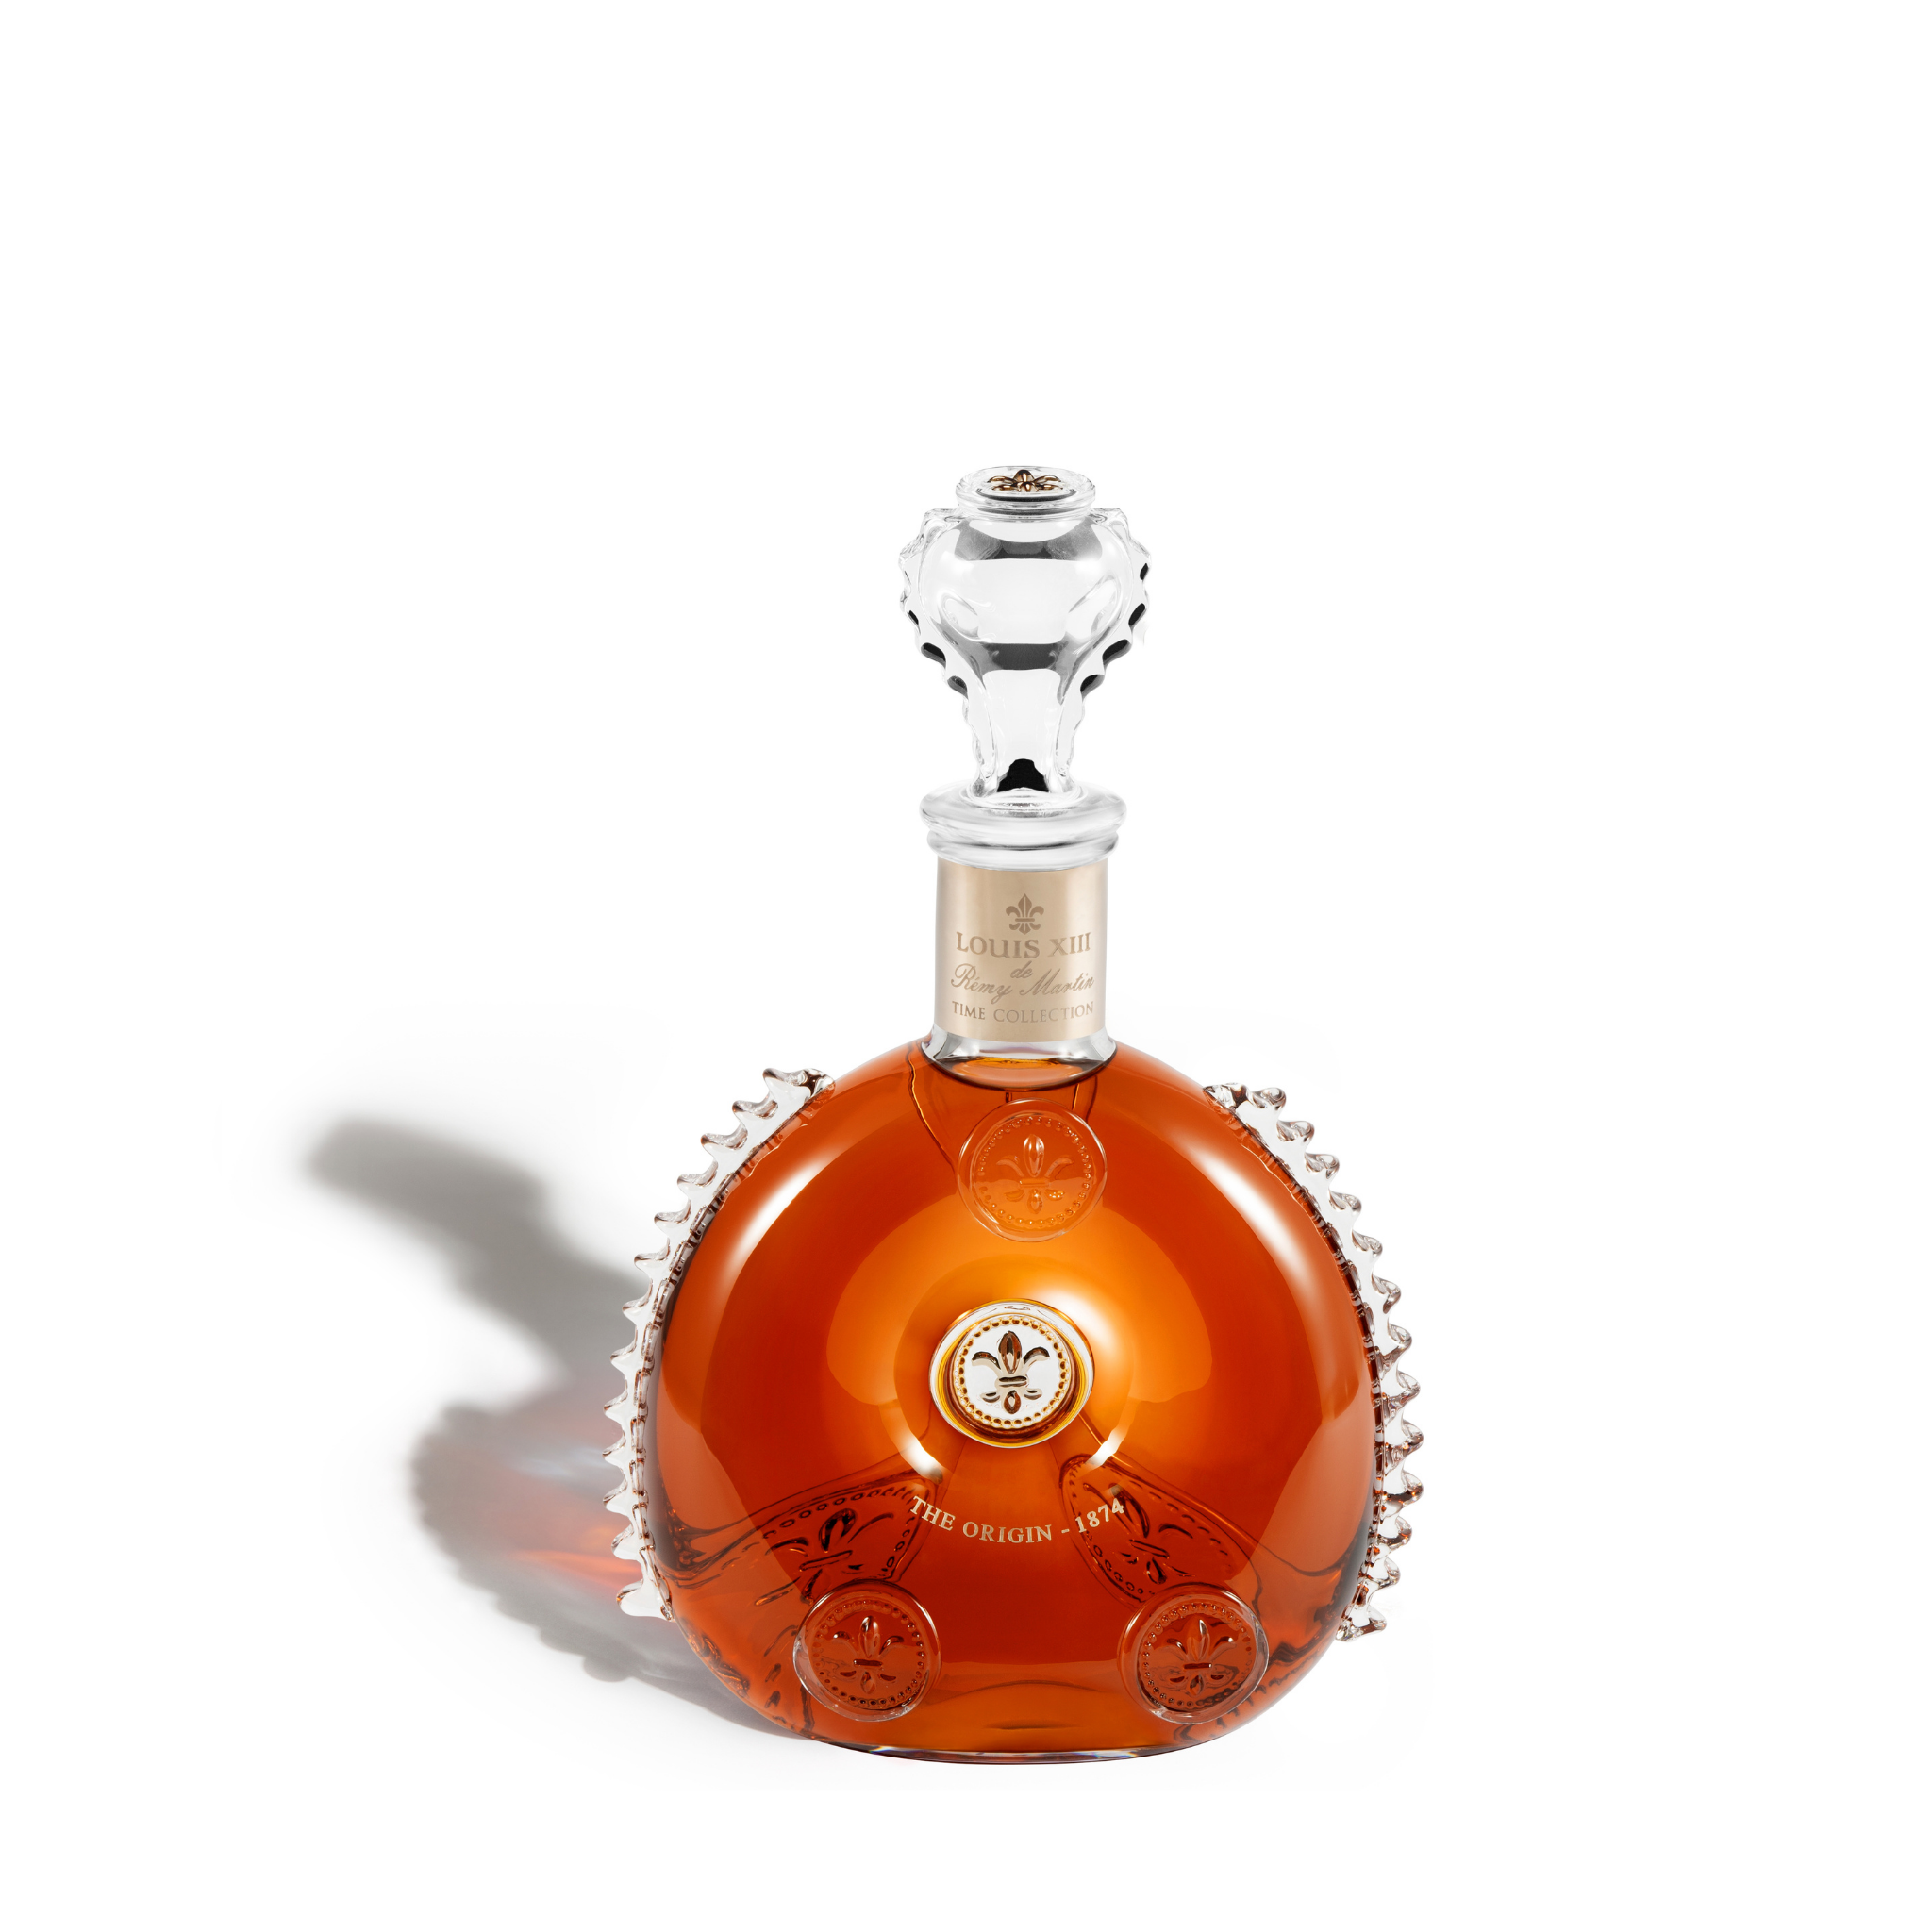 Louis XIII unveils 'first' Cognac Mathusalem - The Spirits Business